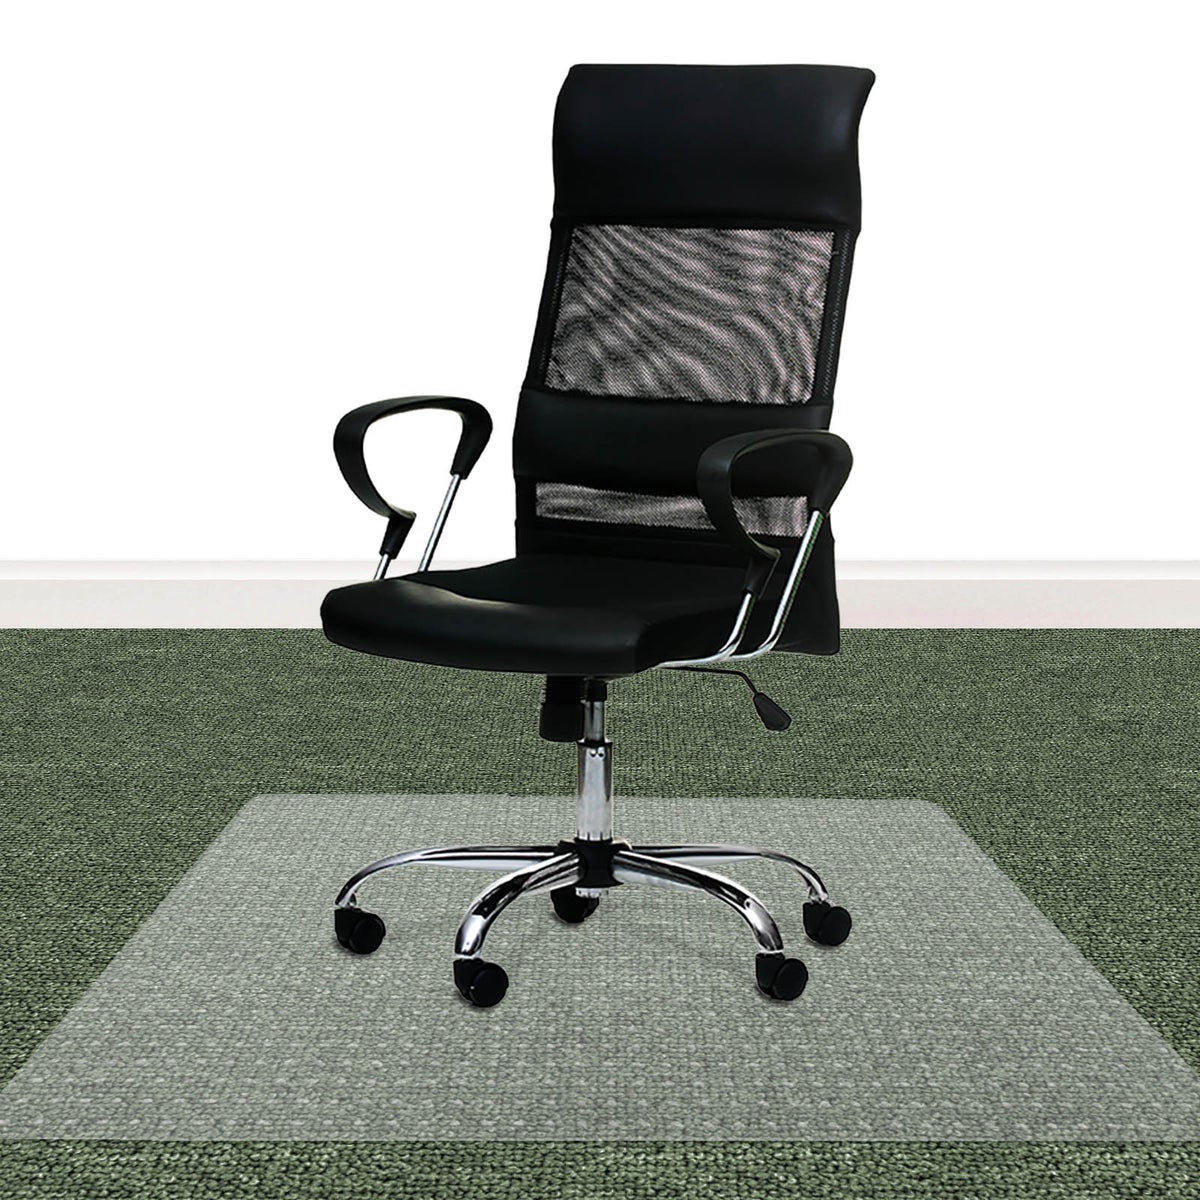 Bodenschutzmatte PET ECO-MAT - 100x120 cm - Teppichboden - Schutzmatte mit Ankernoppen auf der Unterseite als Unterlage für Bürostuhl